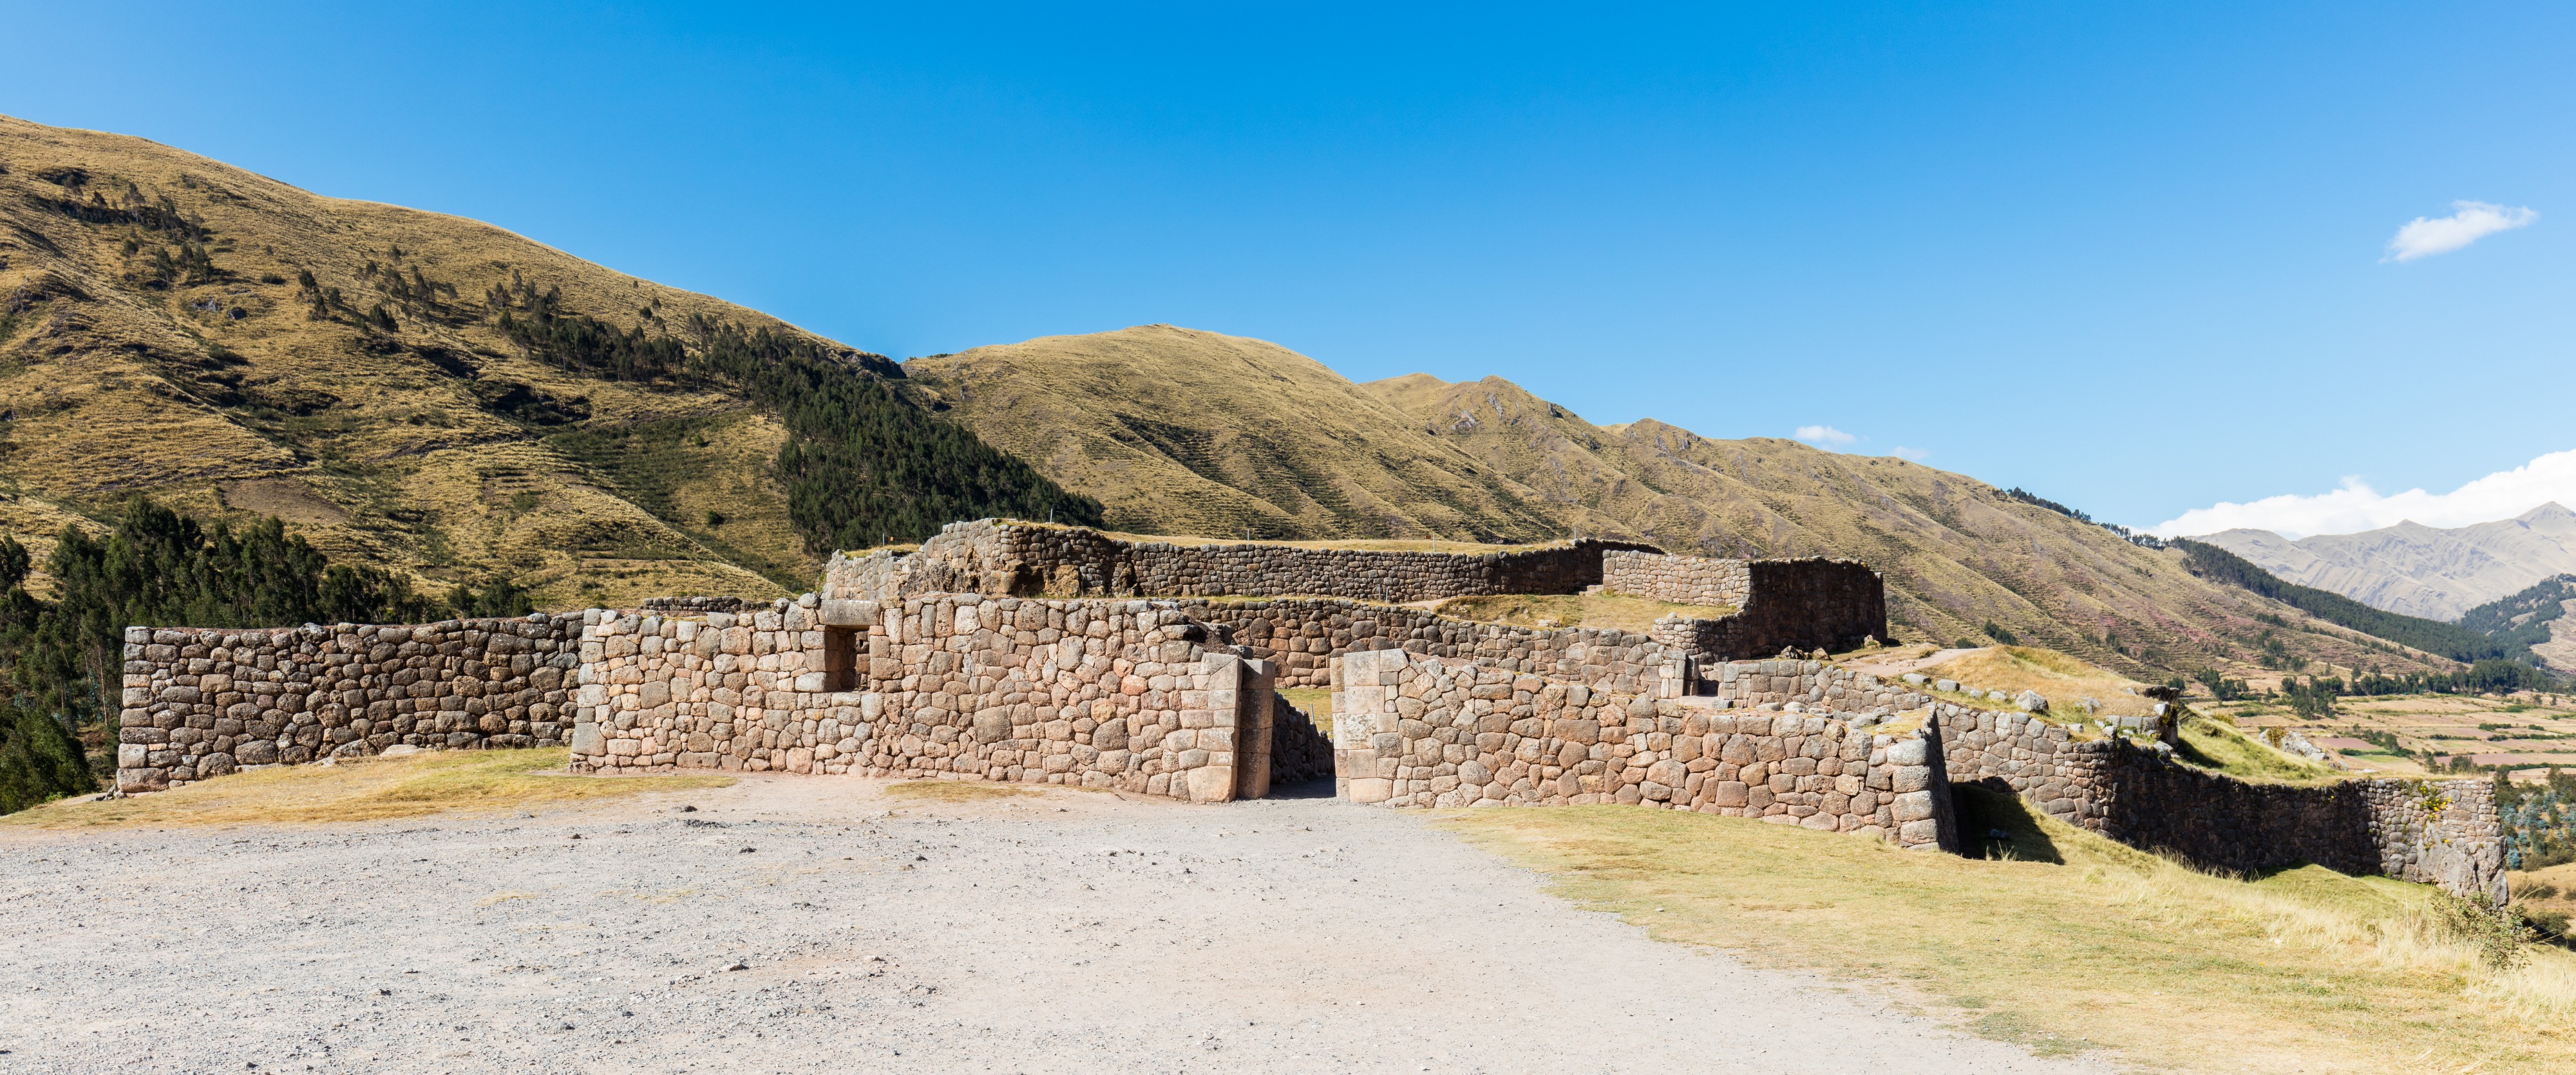 Puca Pucara, Cuzco, Perú, 2015-07-31, DD 80